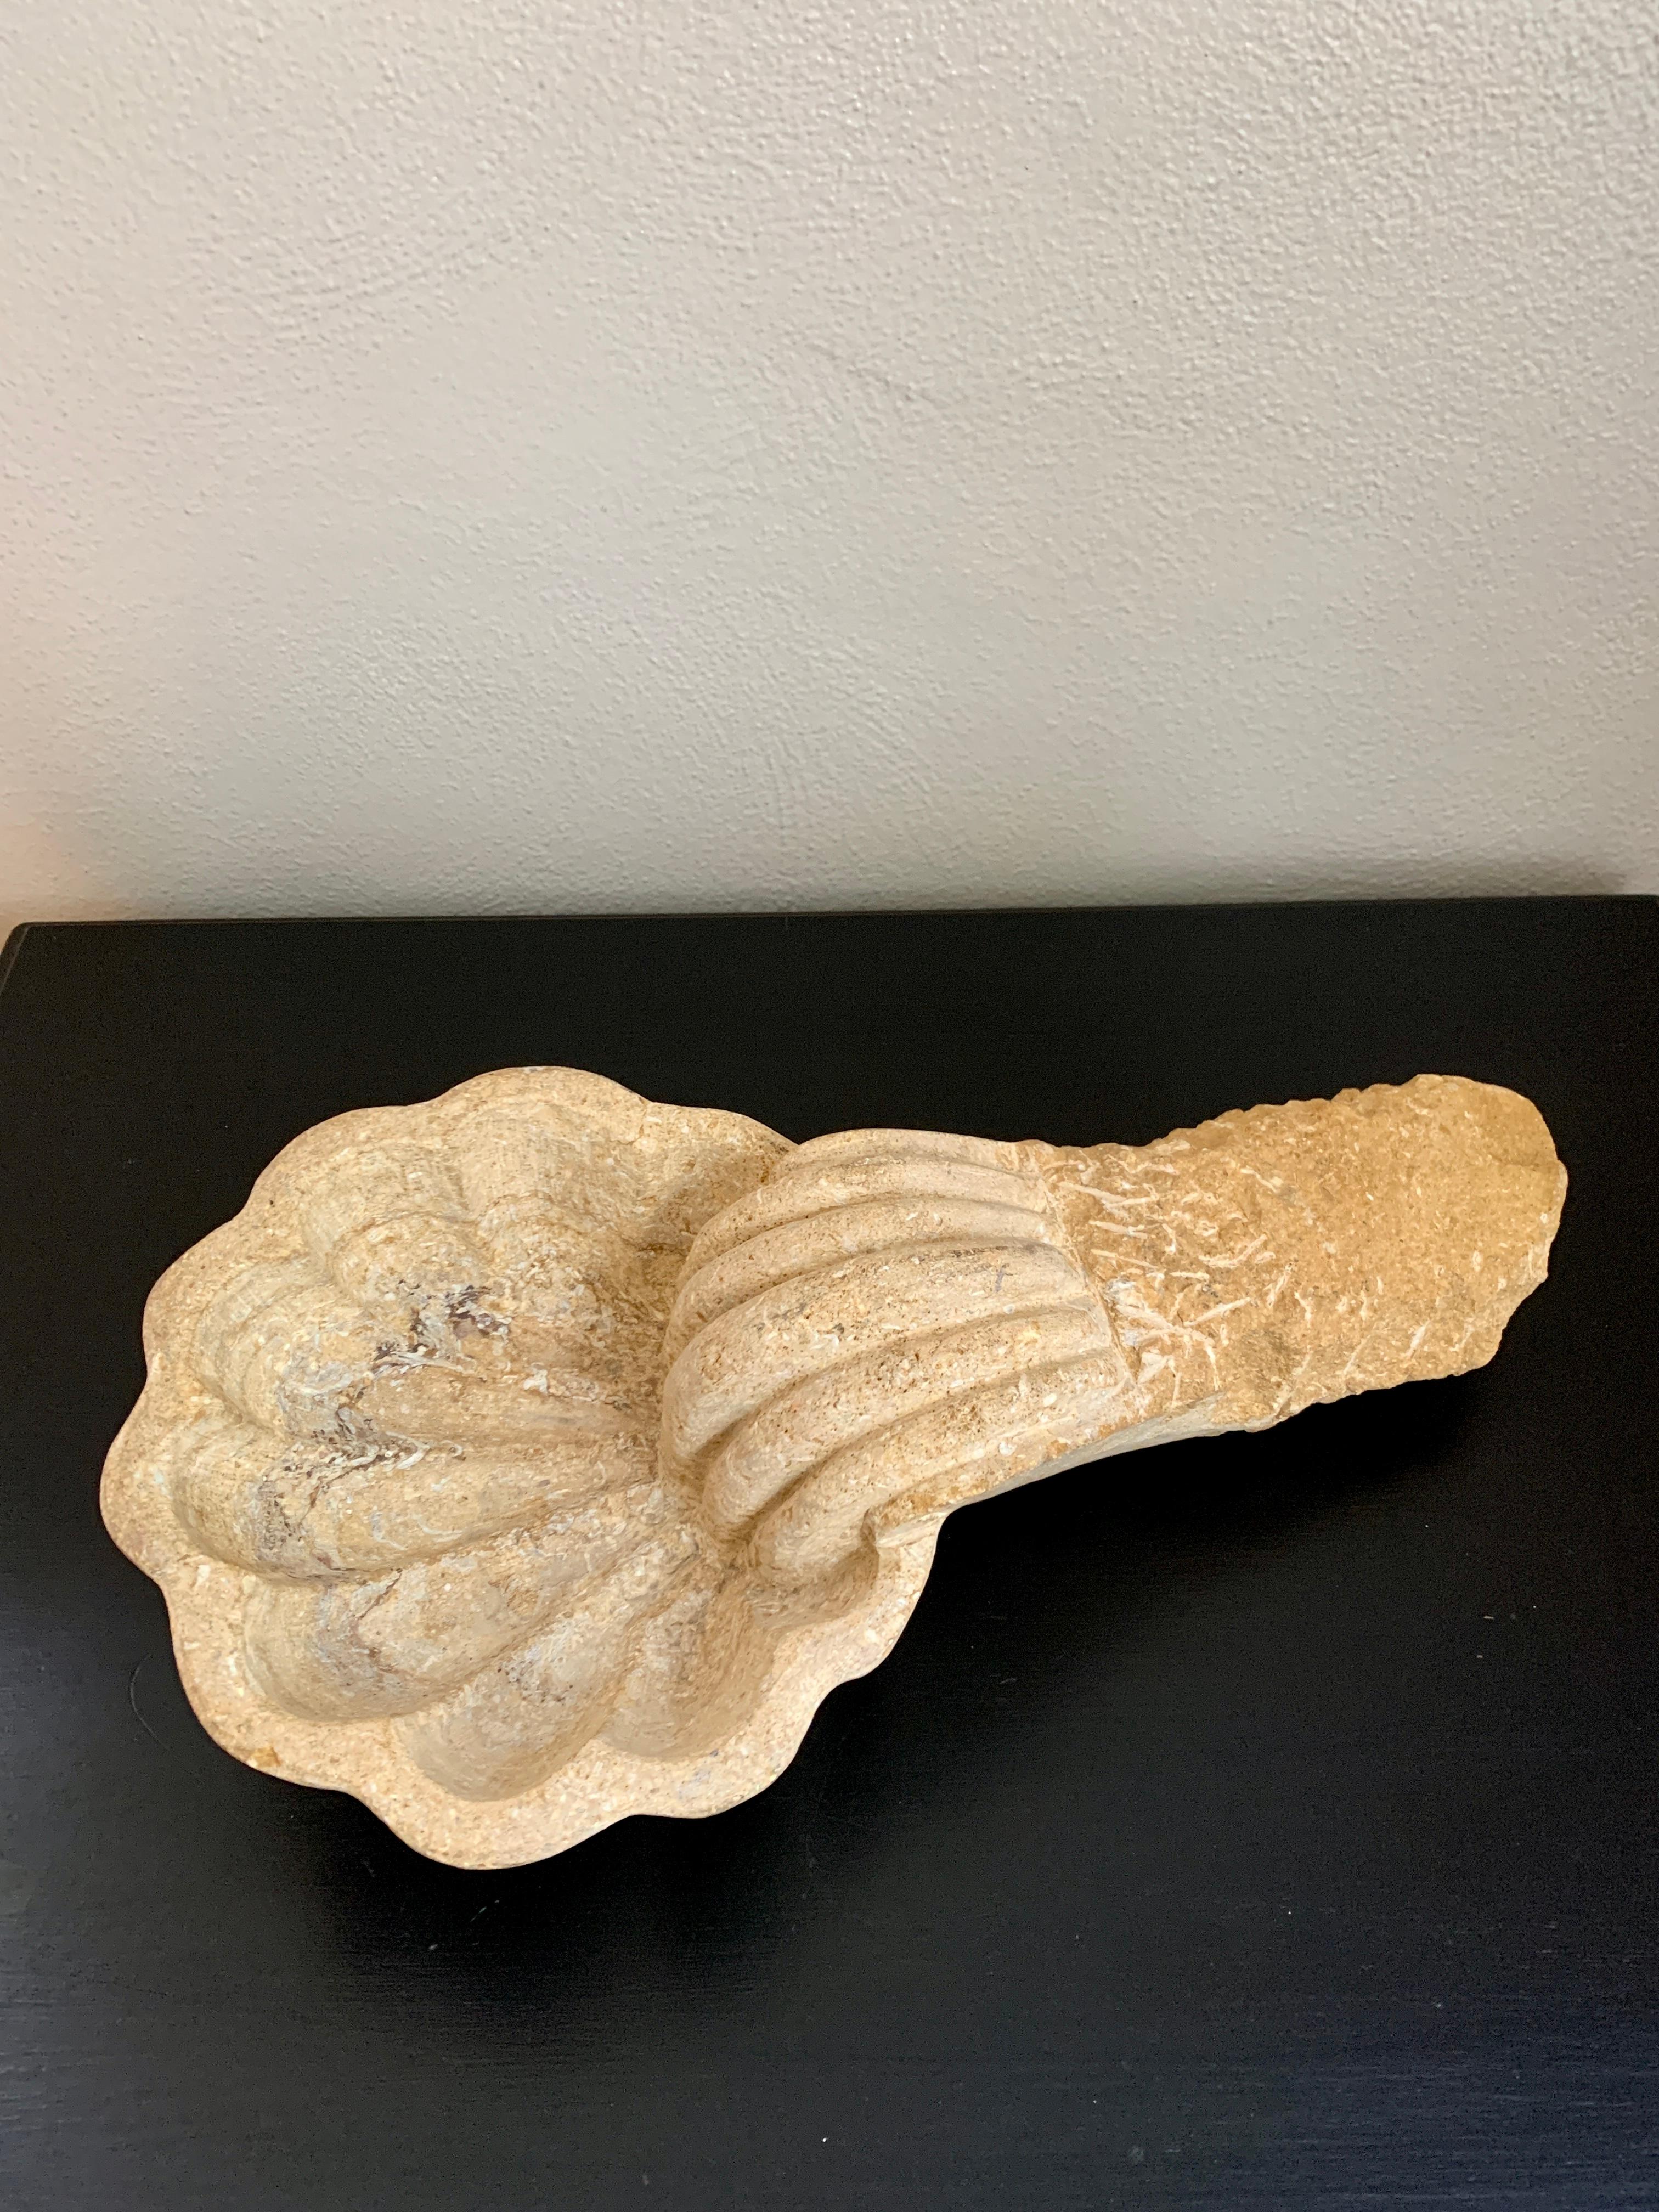 Ein wunderschönes barockes, handgeschnitztes Weihwasserbecken aus Marmor in Form einer Muschel. Dieses Stück wäre ein schönes Kunstobjekt, eine Skulptur oder sogar eine Gartendekoration.

Italien, 19. Jahrhundert

Maße: 17 